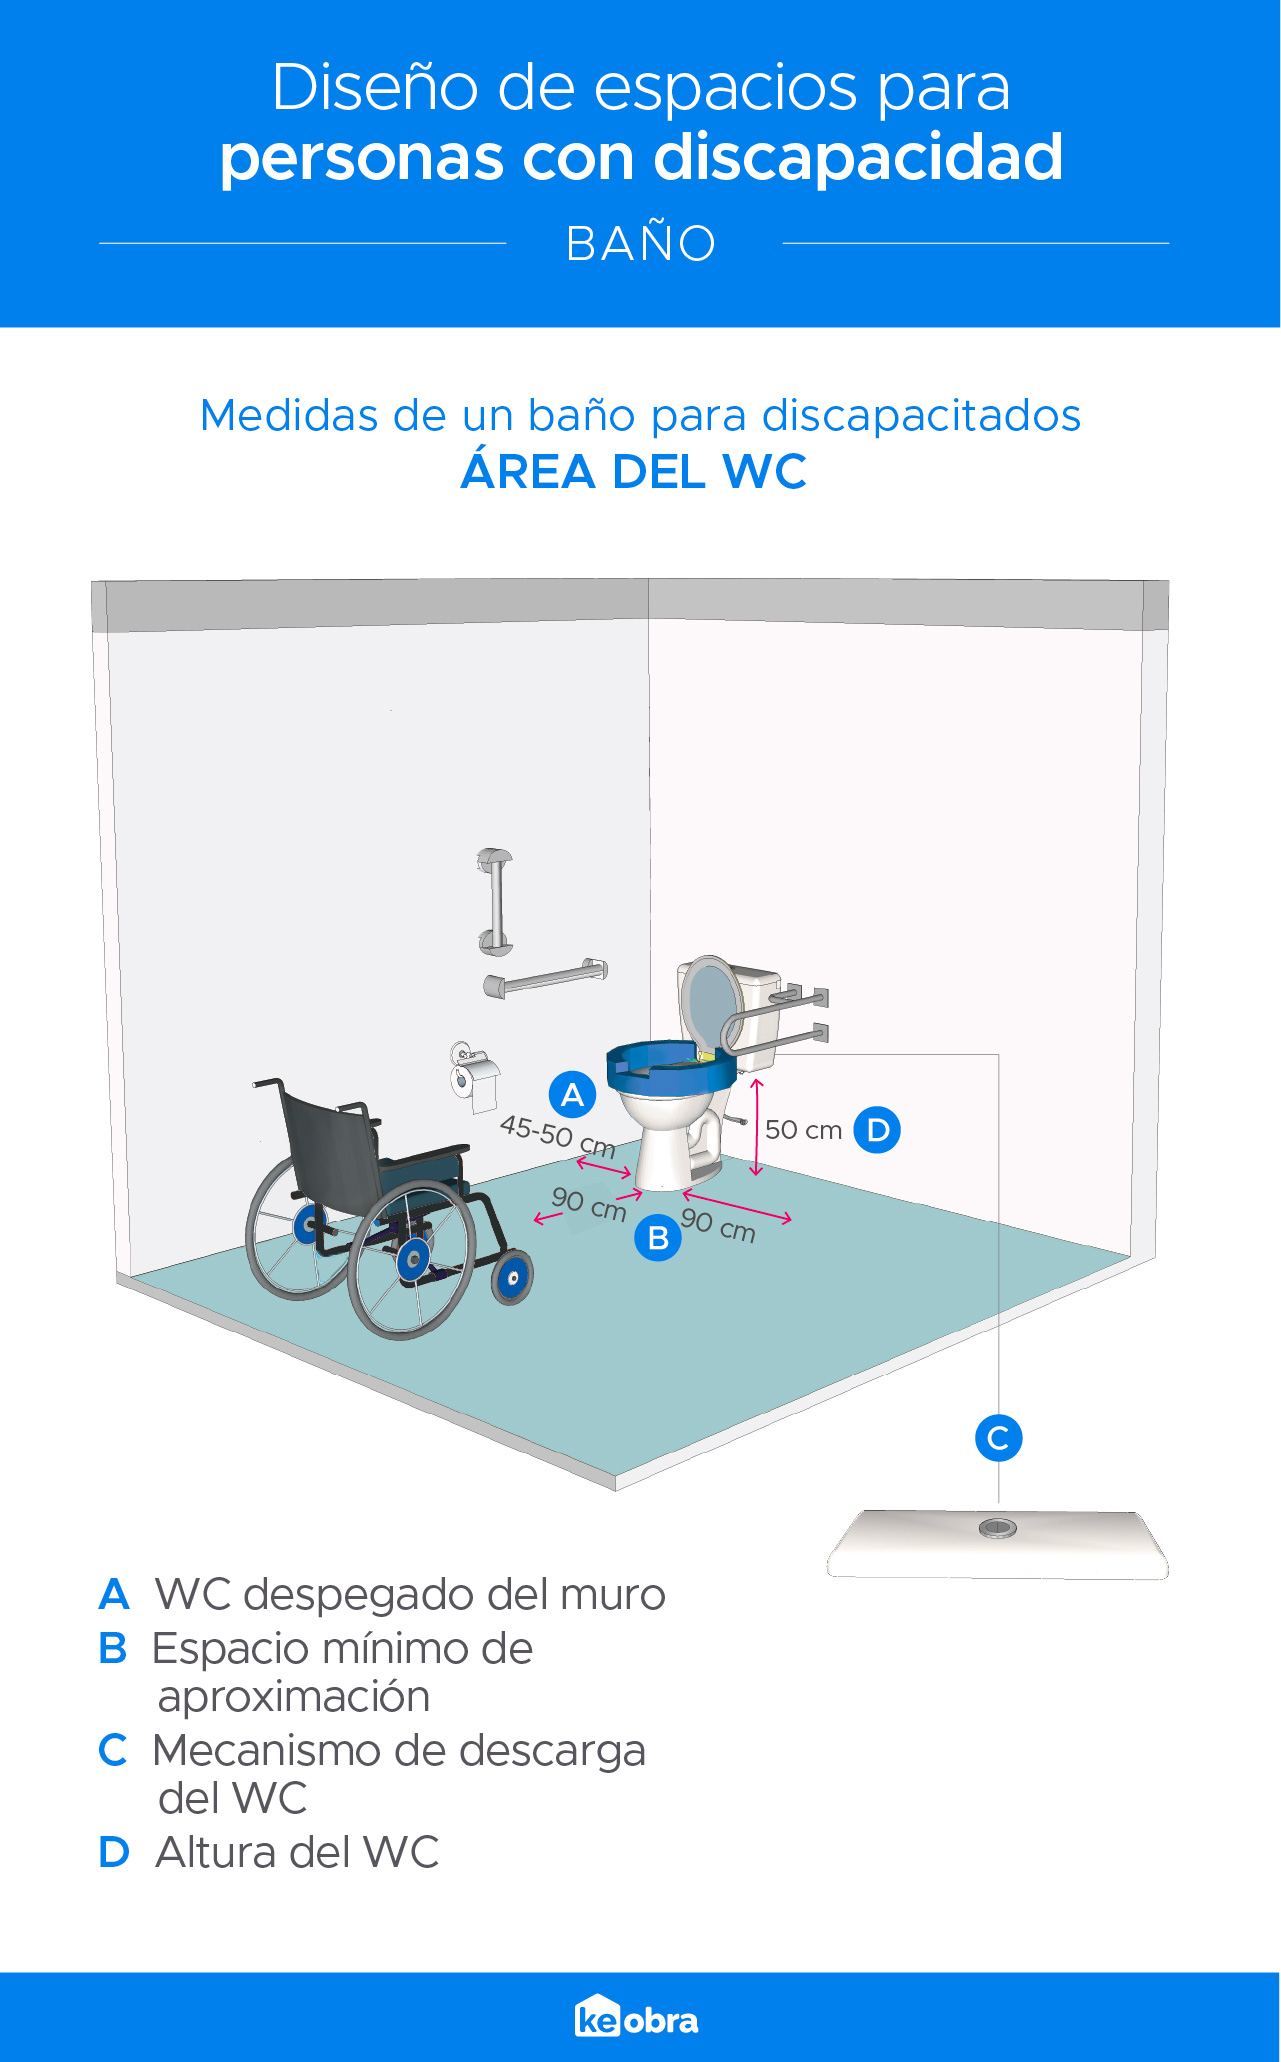 Medidas de un baño para discapacitados: área del wc; WC despegado del muro, Espacio mínimo de aproximación, Mecanismo de descarga del wc, Altura del wc.